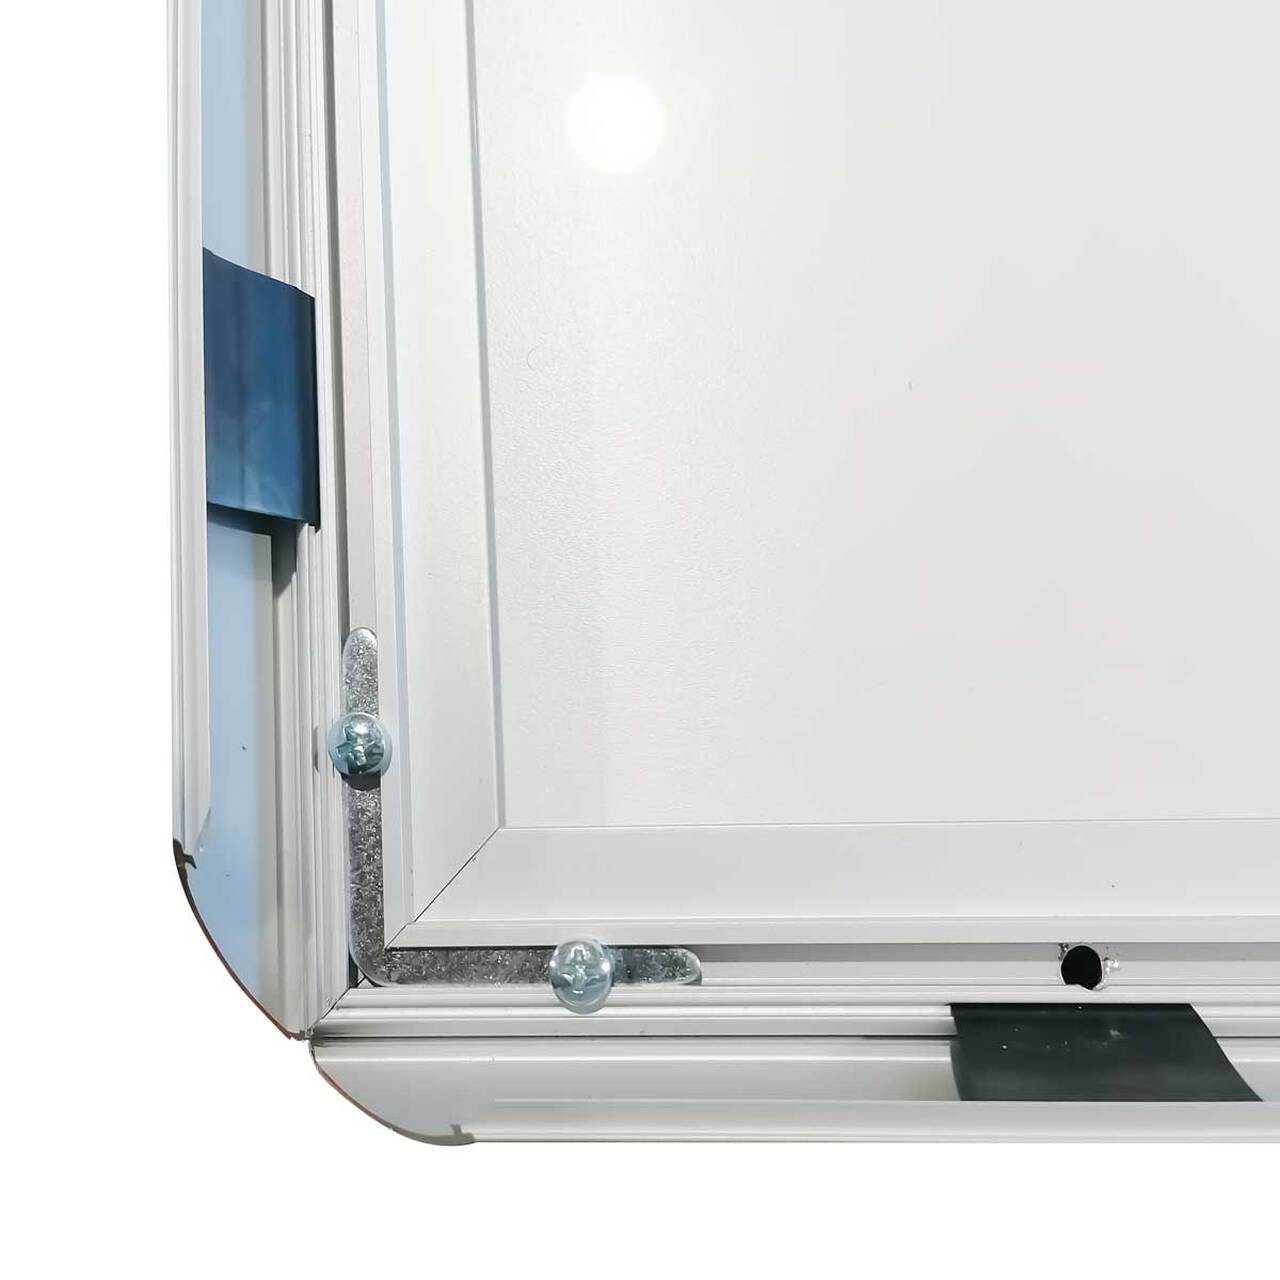 Casetă luminoasă pentru interior slim cu leduri simplă față A3, JJ DISPLAYS, 297 x 420 mm